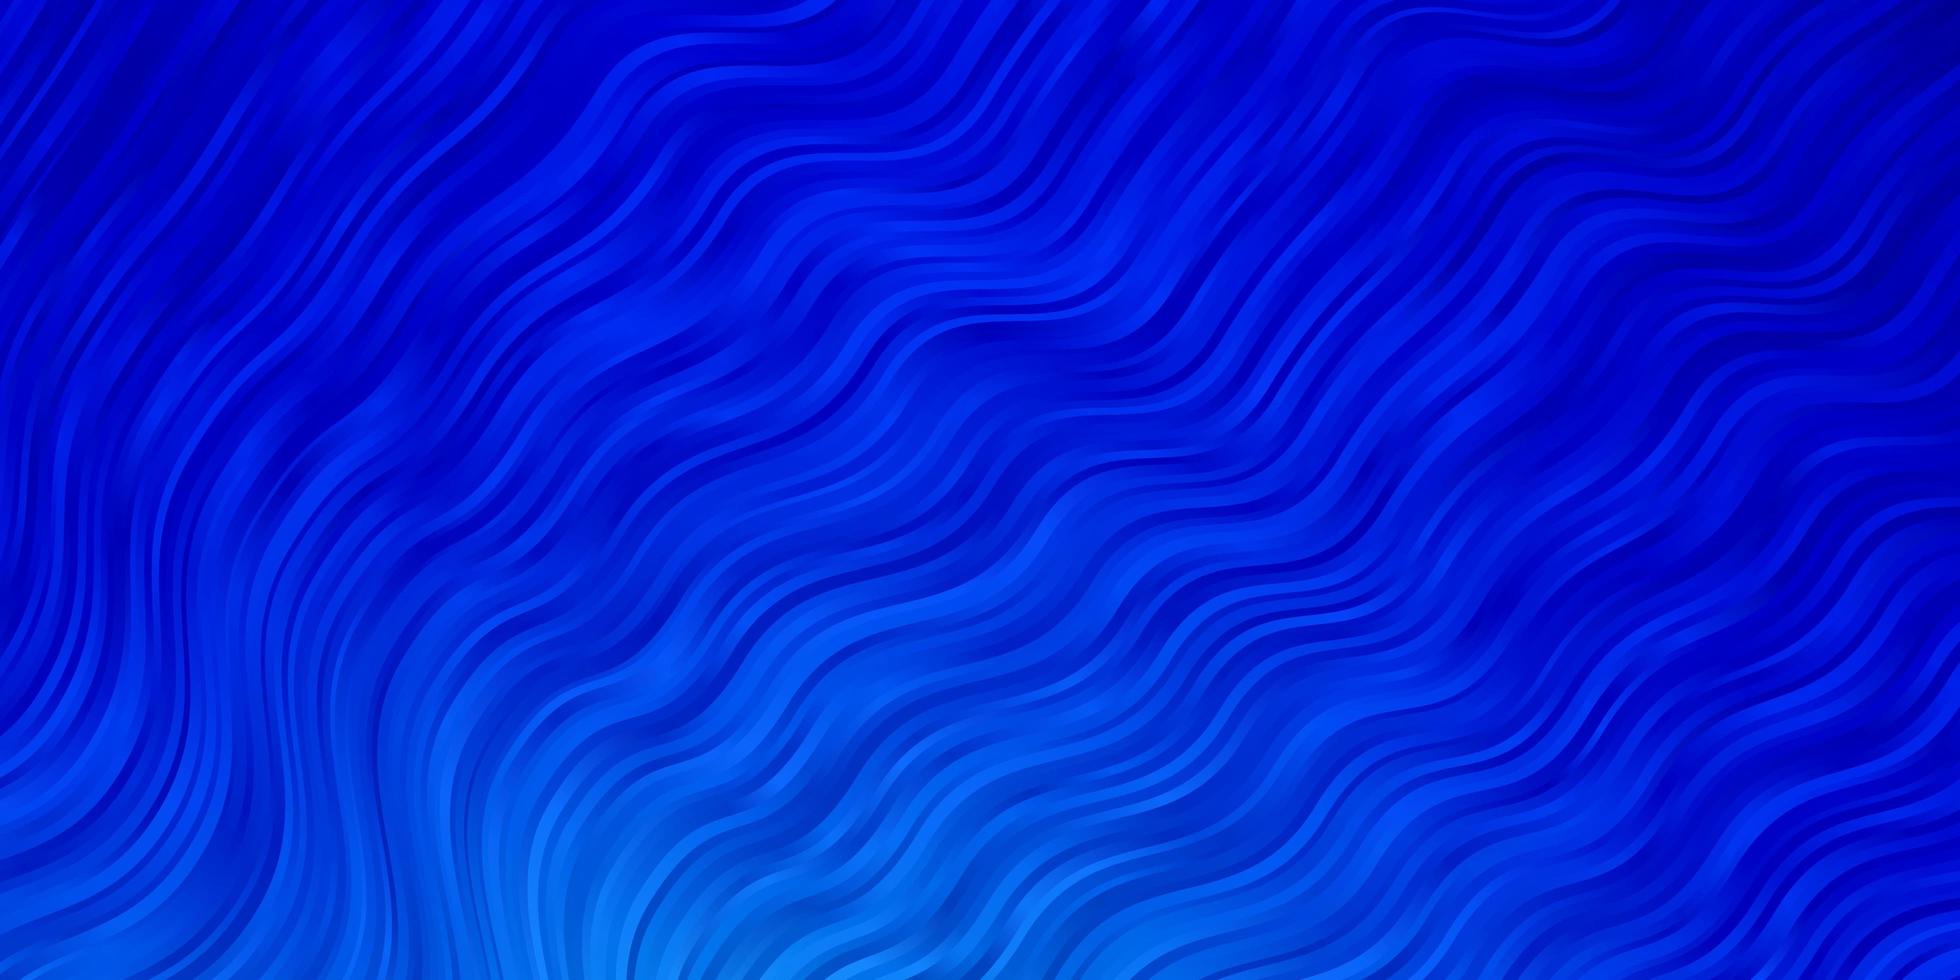 sfondo vettoriale azzurro con arco circolare.